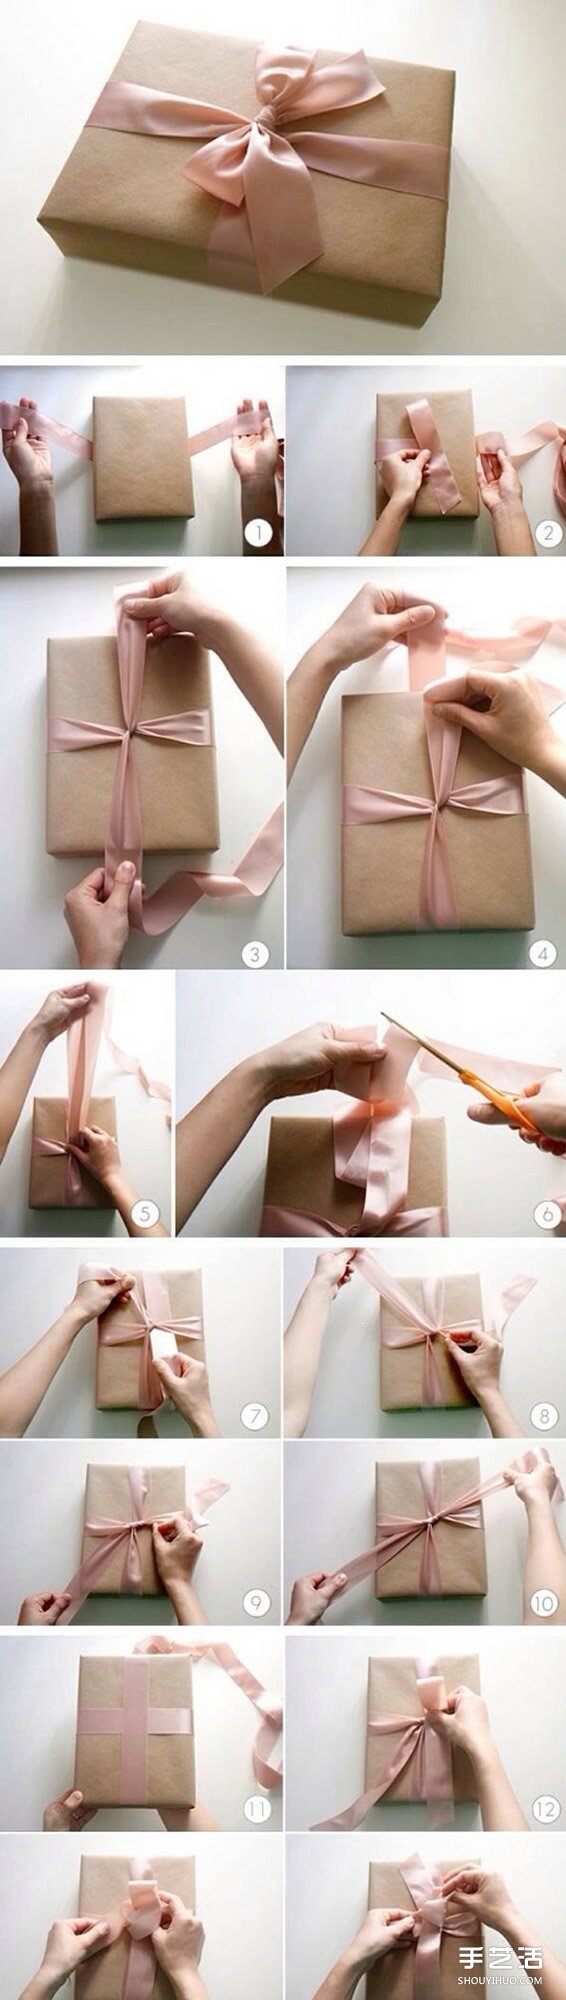 能够表达心意的礼物包装的做法手工DIY图解- www.aizhezhi.com